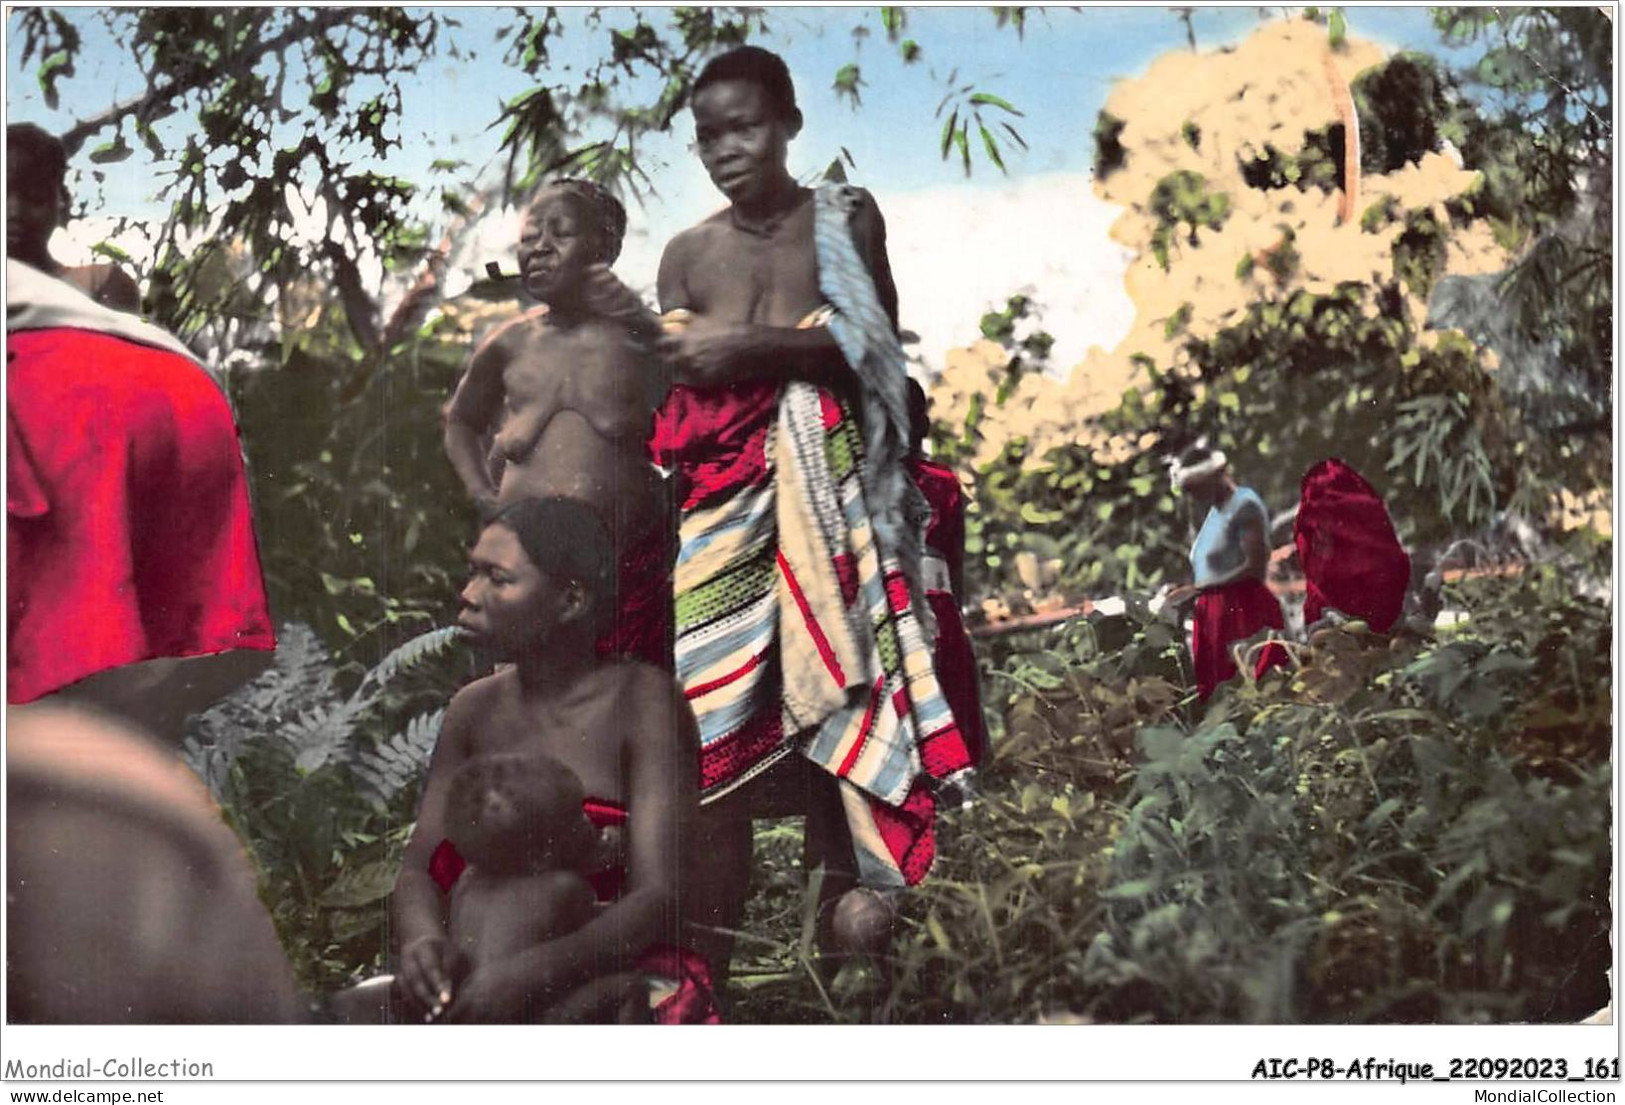 AICP8-AFRIQUE-0935 - AFRICOLOR - En Forêt équatoriale FEMME SEINS NUS - Unclassified